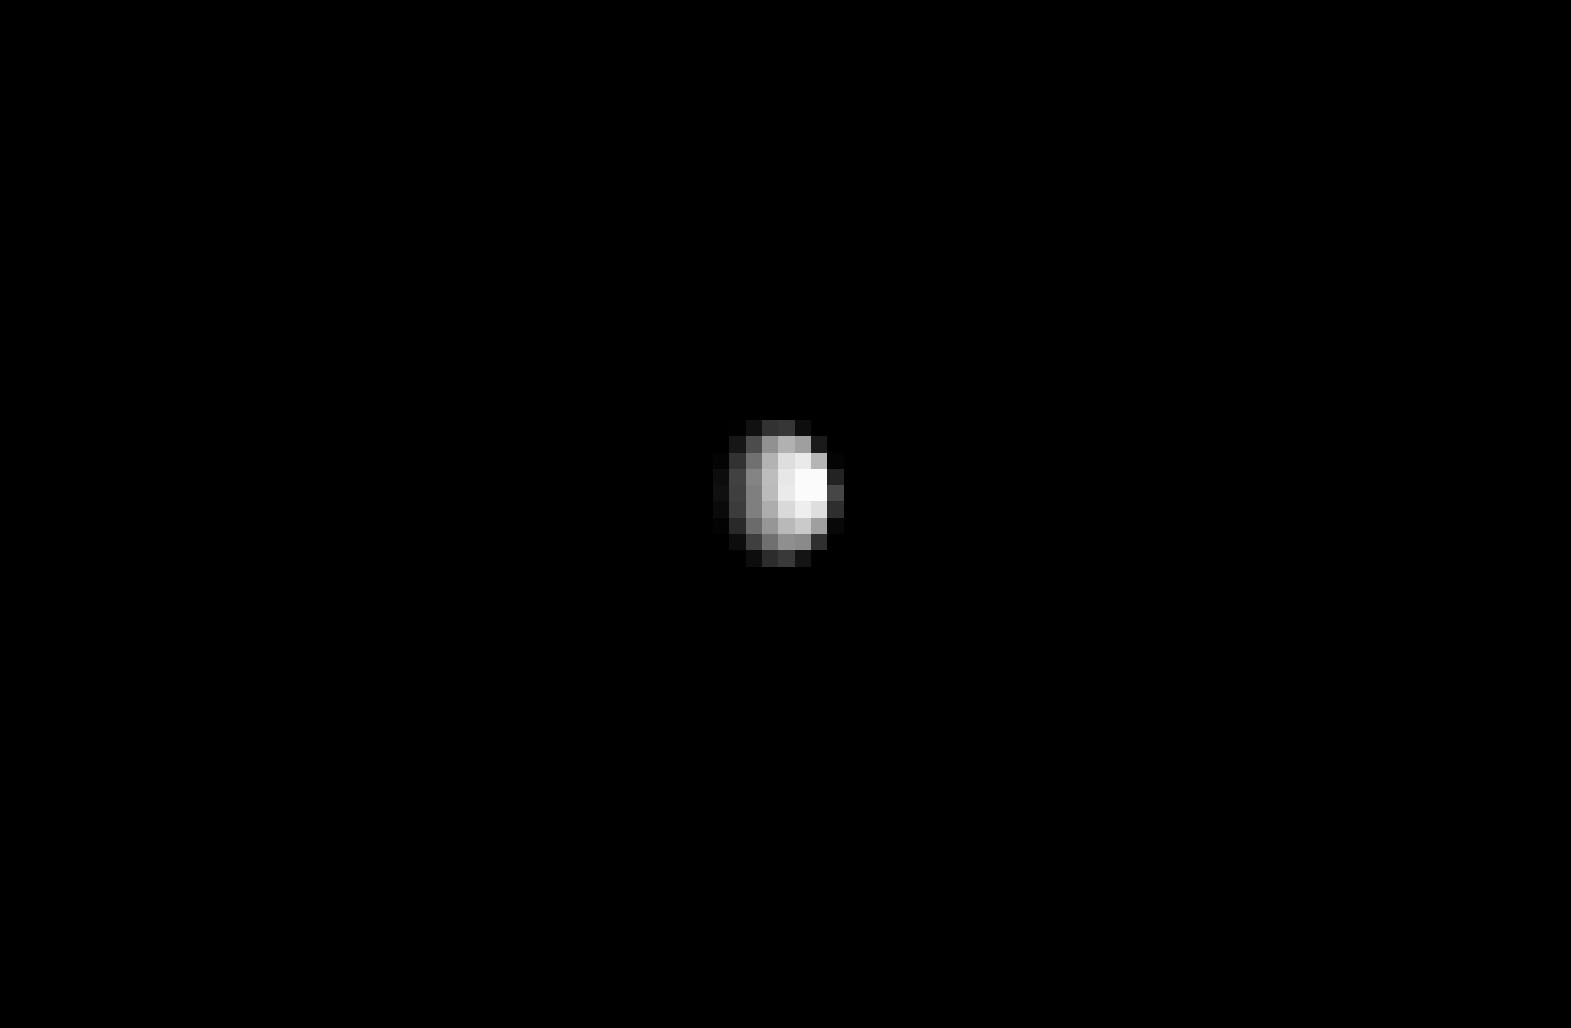 Un aperçu de neuf pixels de large de la planète naine Cérès. Certes, pour l’instant Hubble nous a offert de meilleurs portraits. L’image a été prise le 1er décembre 2014 par la sonde spatiale Dawn. Celle-ci, après avoir quitté l’astéroïde Vesta en août 2012, a déjà parcouru 168 millions de km et n’est plus qu’à un million de km de cet astre de 950 km de diamètre, le plus gros de la ceinture principale d’astéroïdes. © Nasa, JPL-Caltech, Ucla, MPS, DLR, IDA